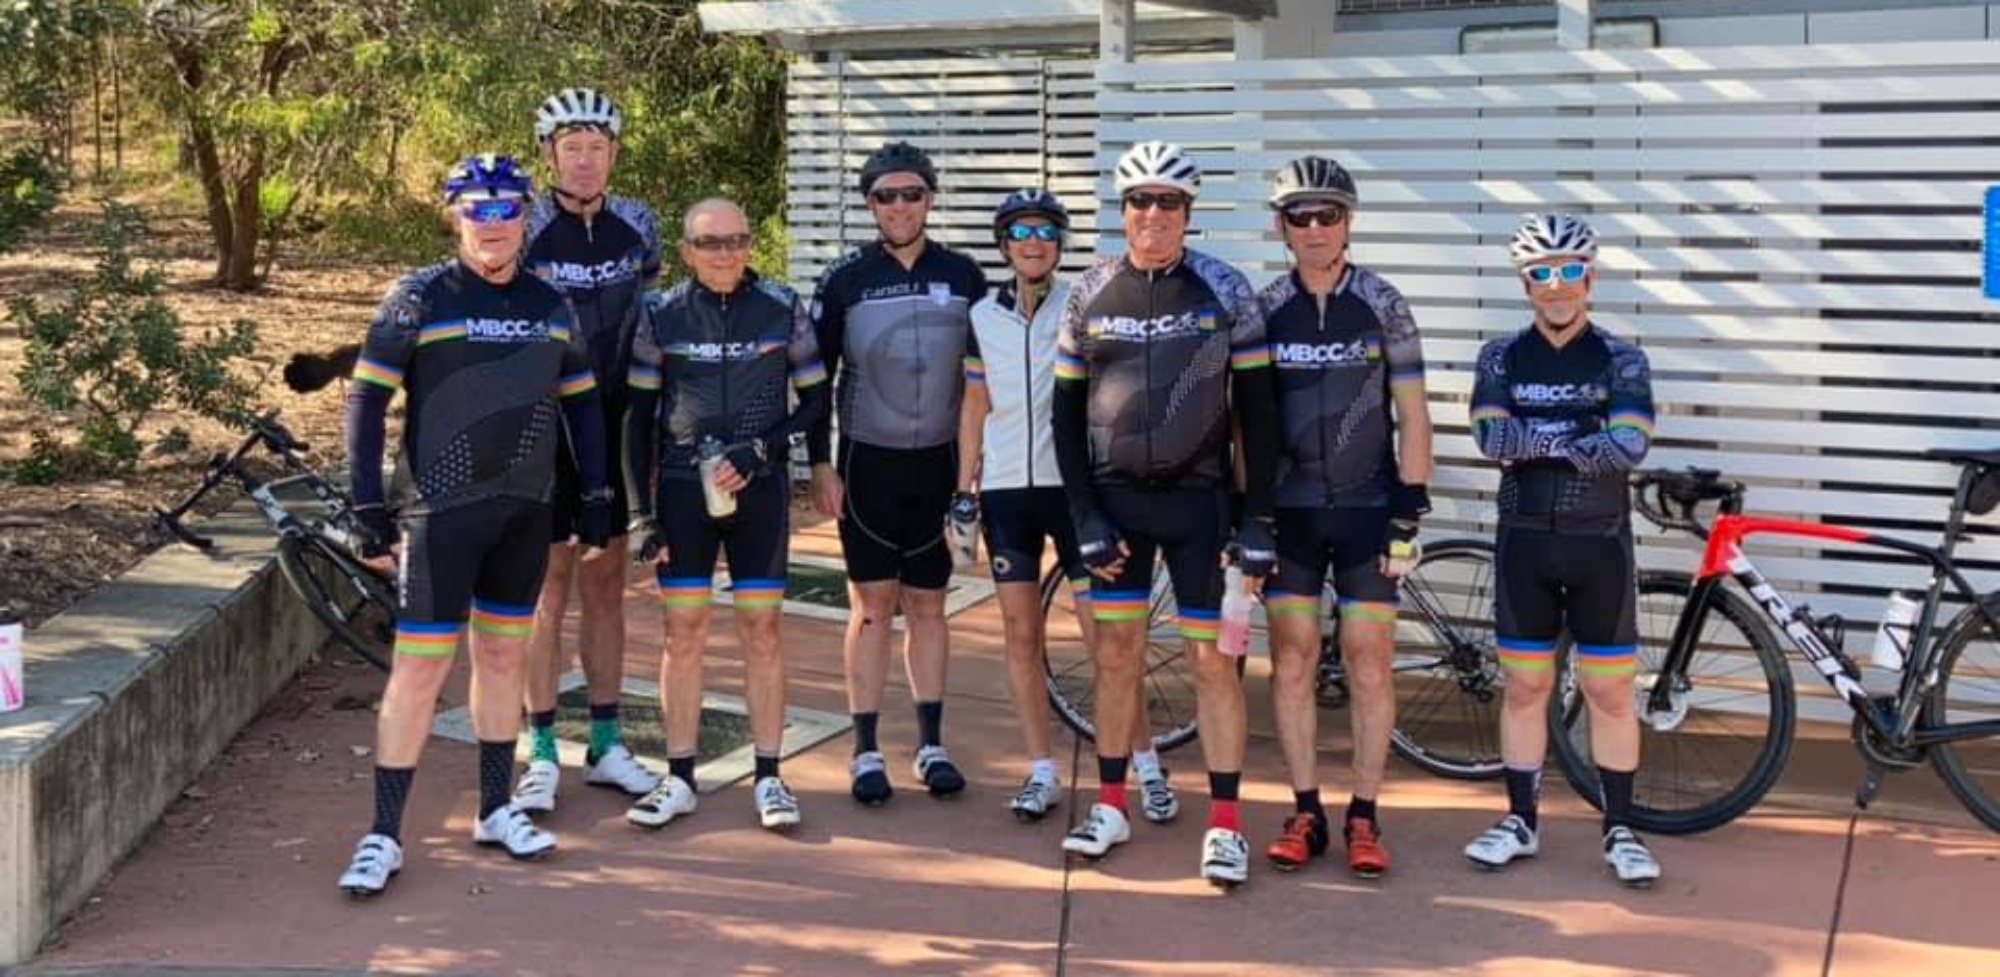 Moreton Bay Cycling Club